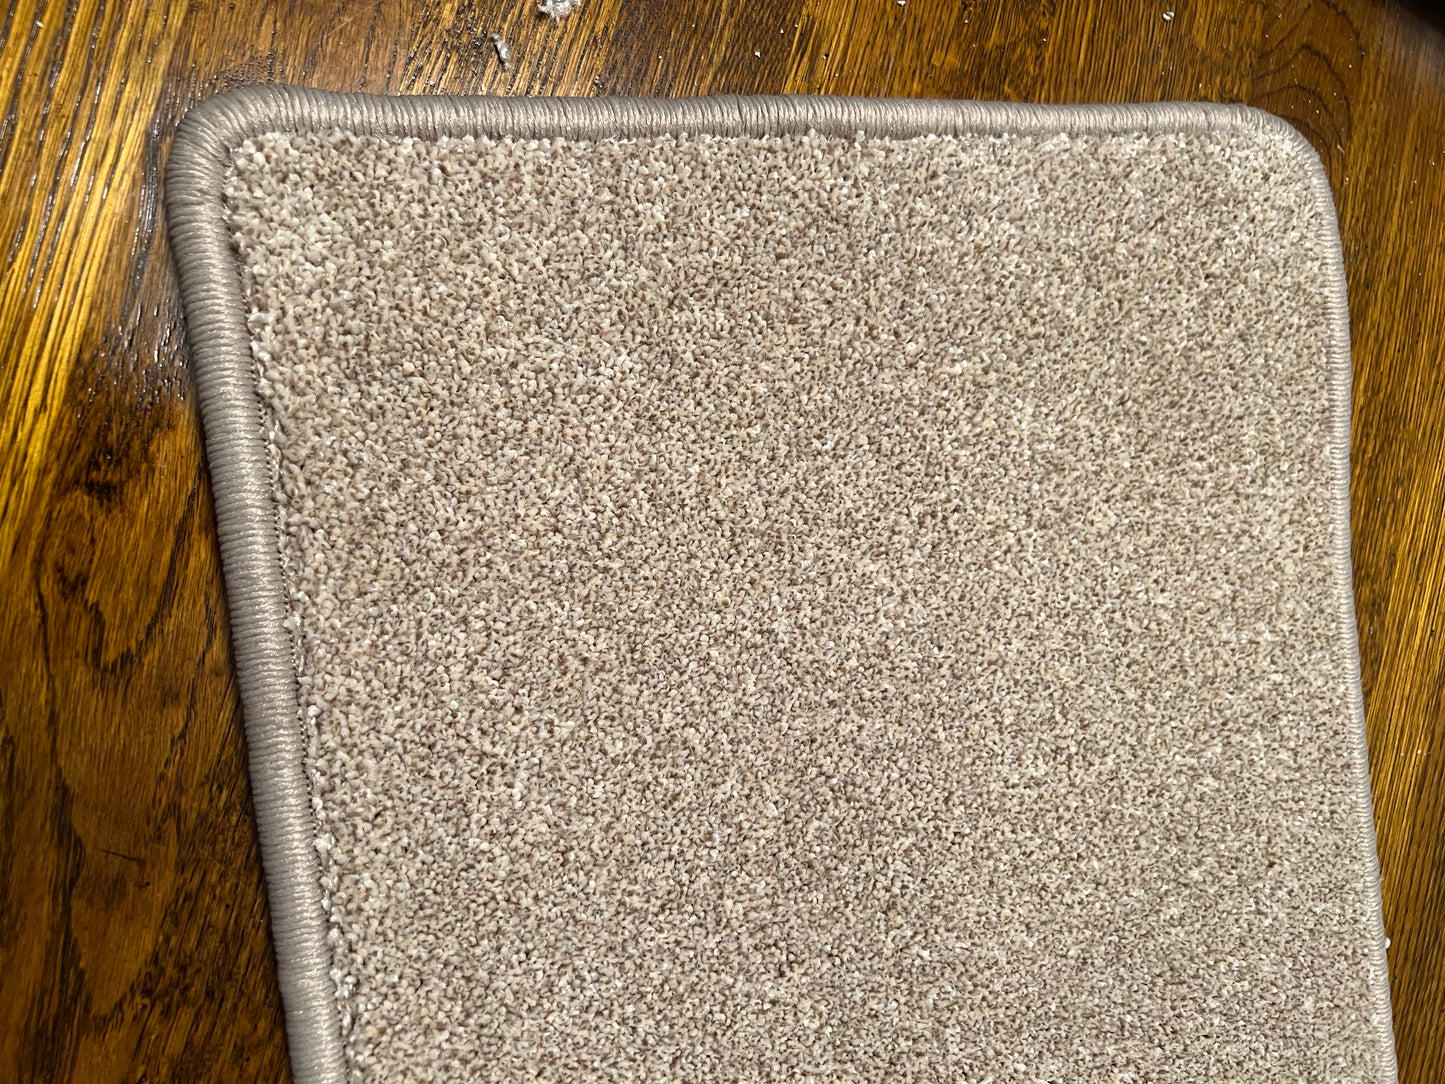 Carpet samples